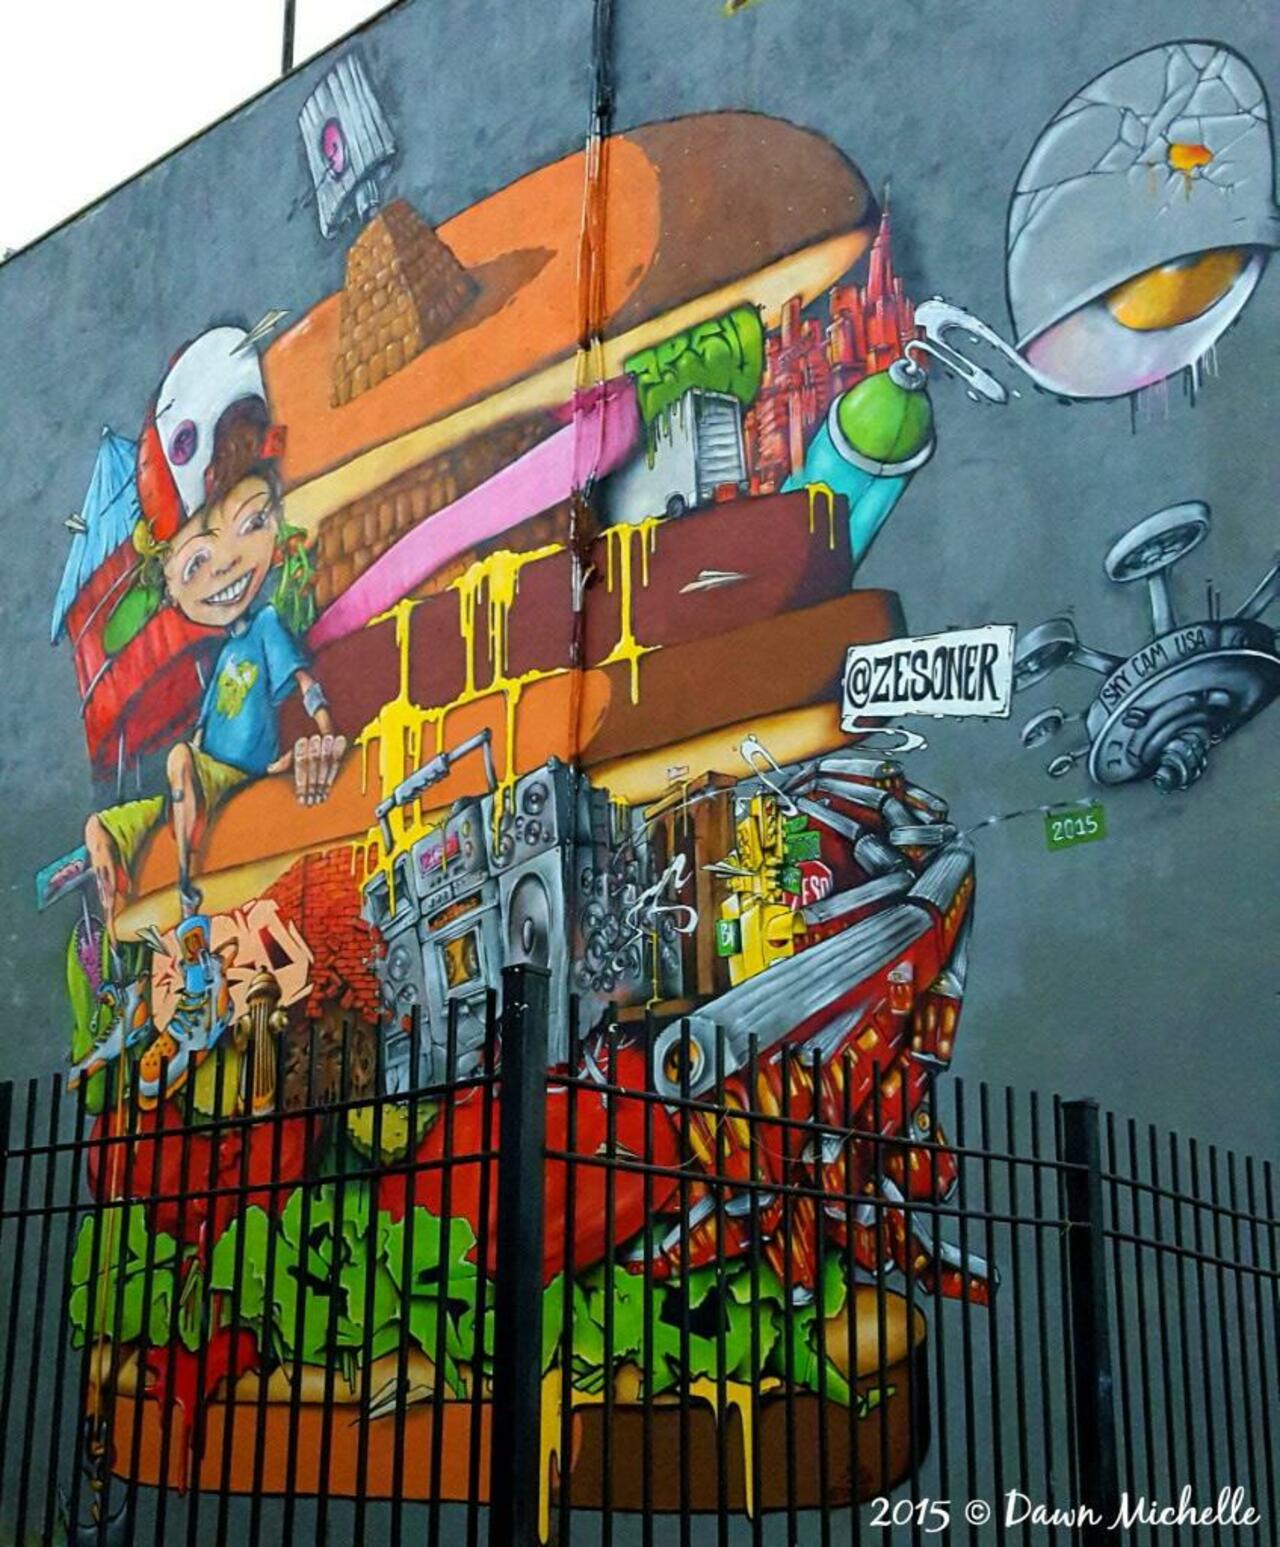 RT @cullin738: A @zesoner burger. #nyc #graffiti #streetart #art #graff @circumjacent @circumjacent @MadeInManchestr @GraffitiFeed https://t.co/WTeYoSclPx